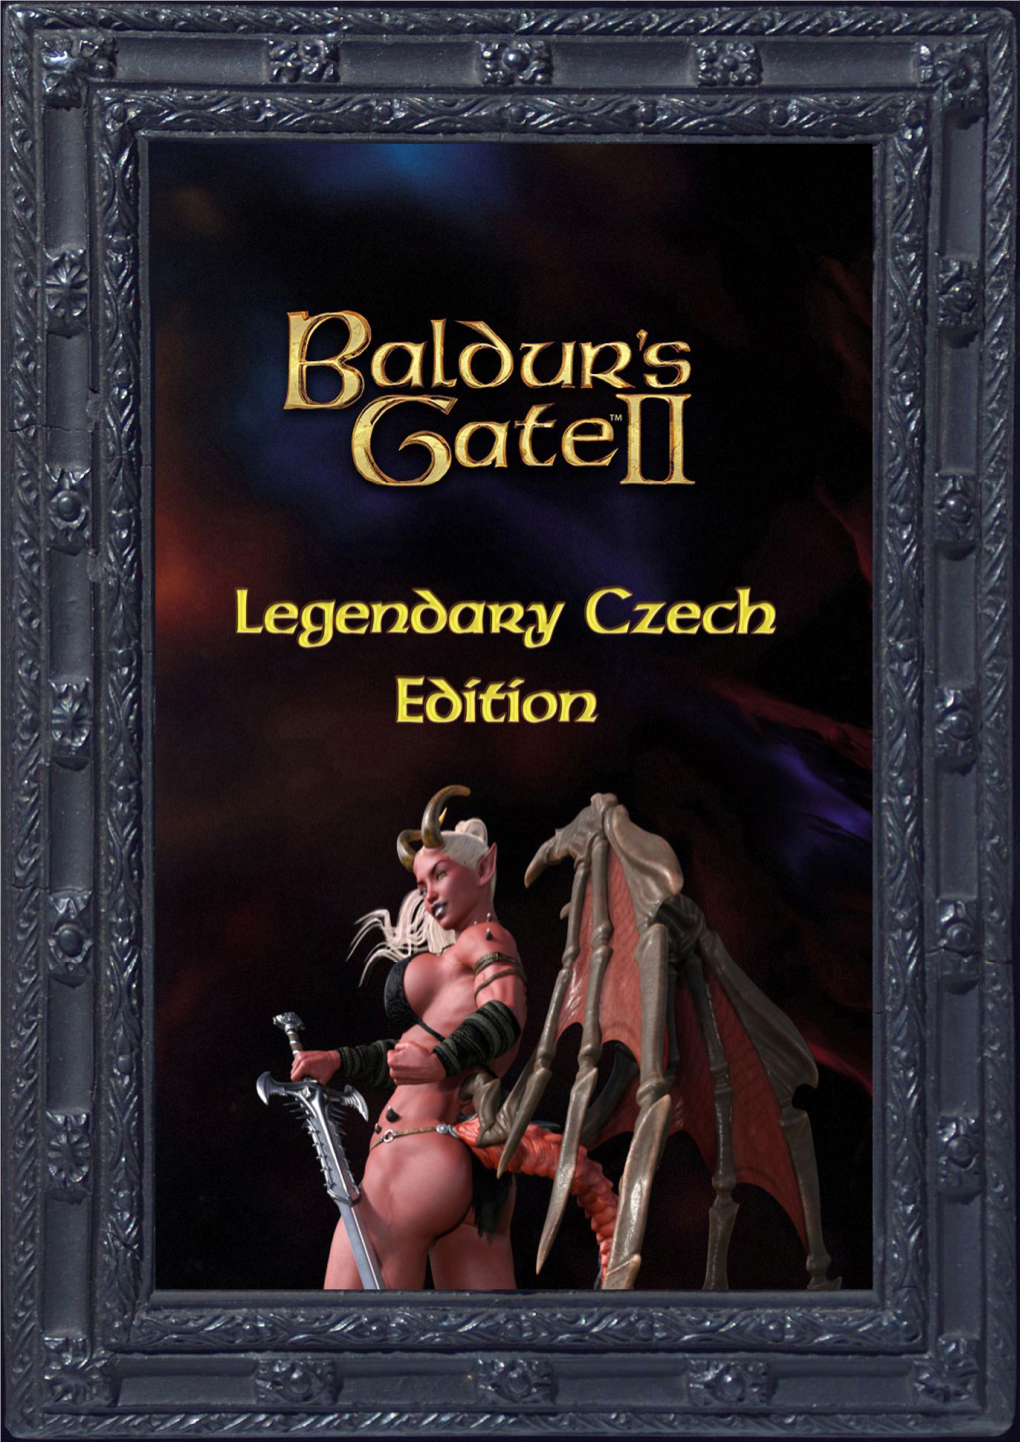 Baldur's Gate 2 Legendary Czech Edition